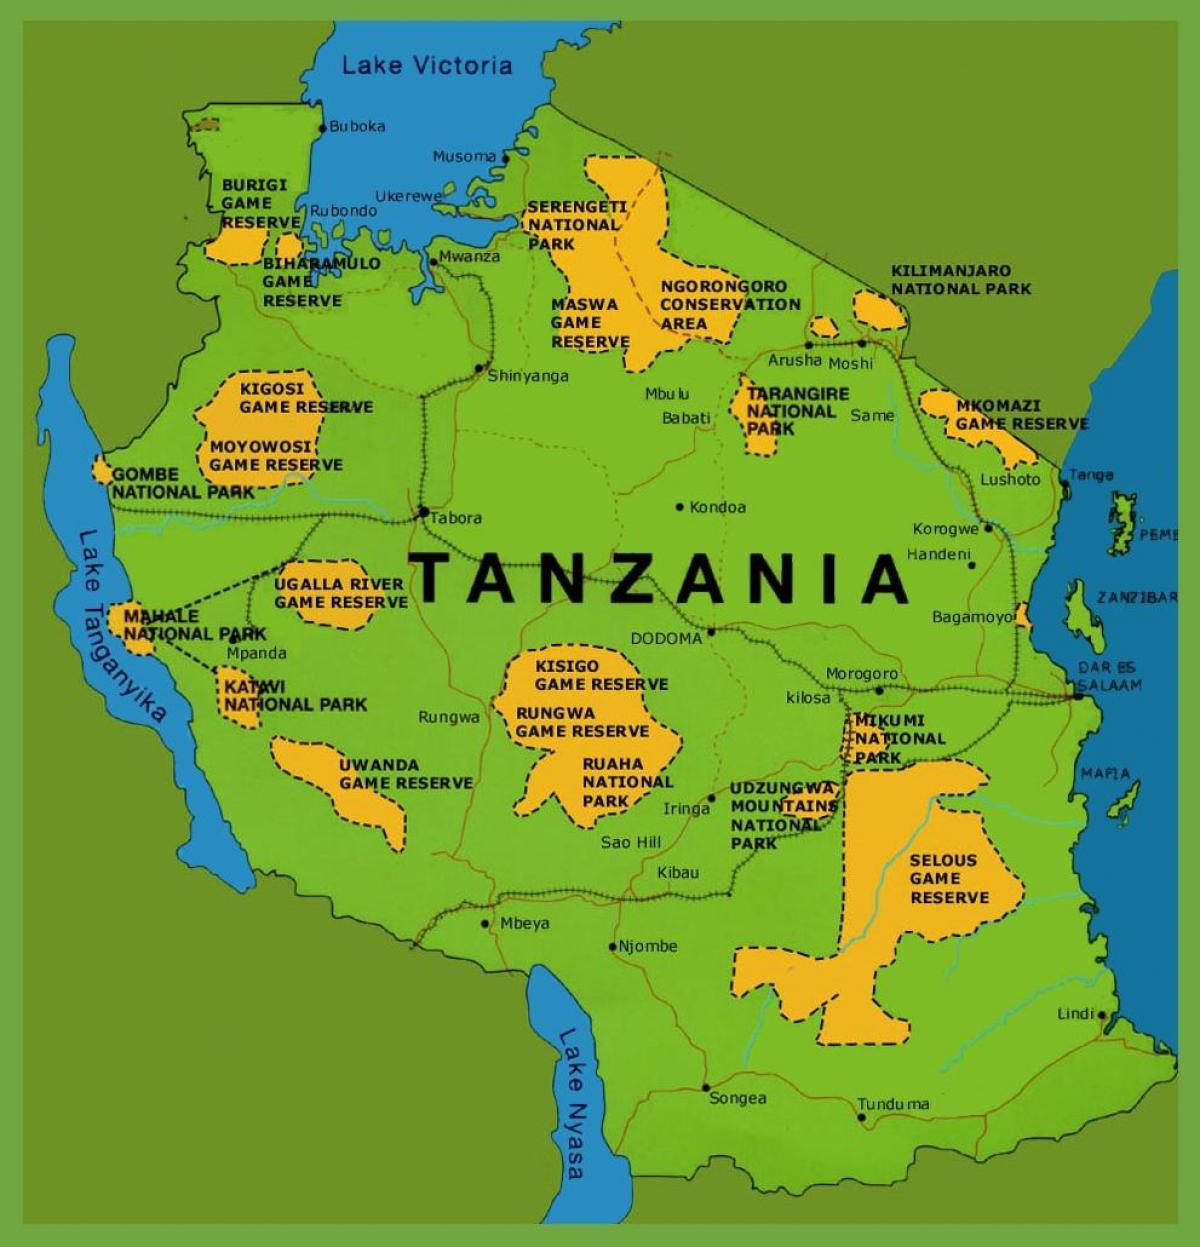 یک نقشه تانزانیا